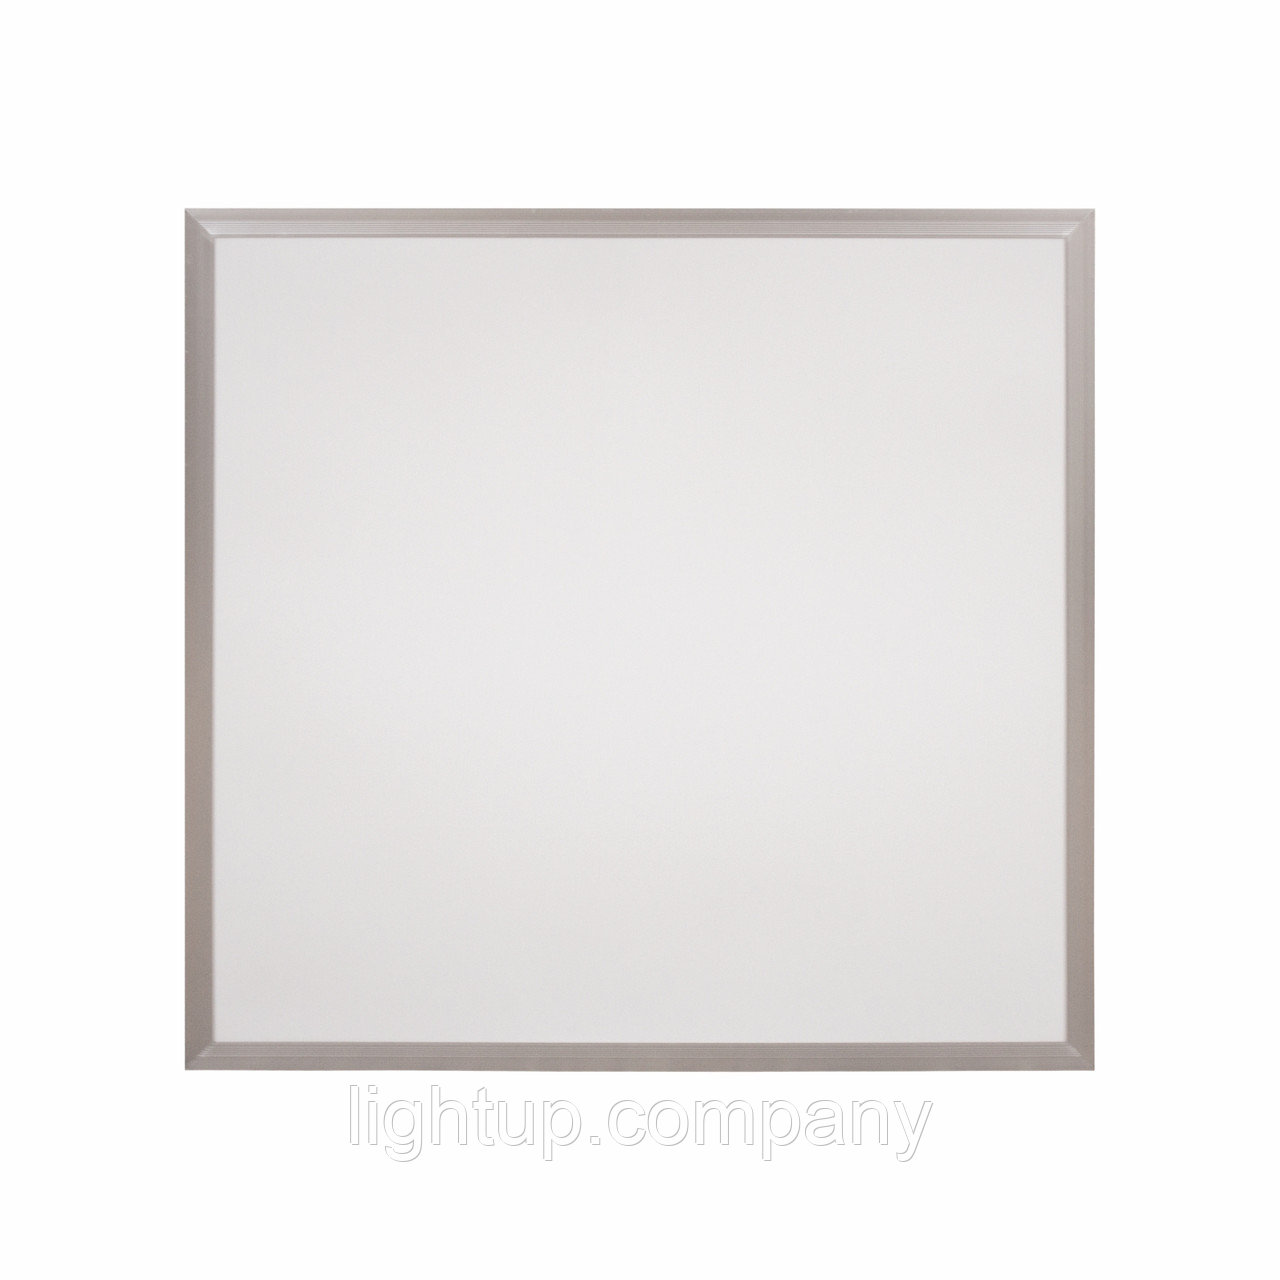 LightUPLed панель белая BM H30 48w